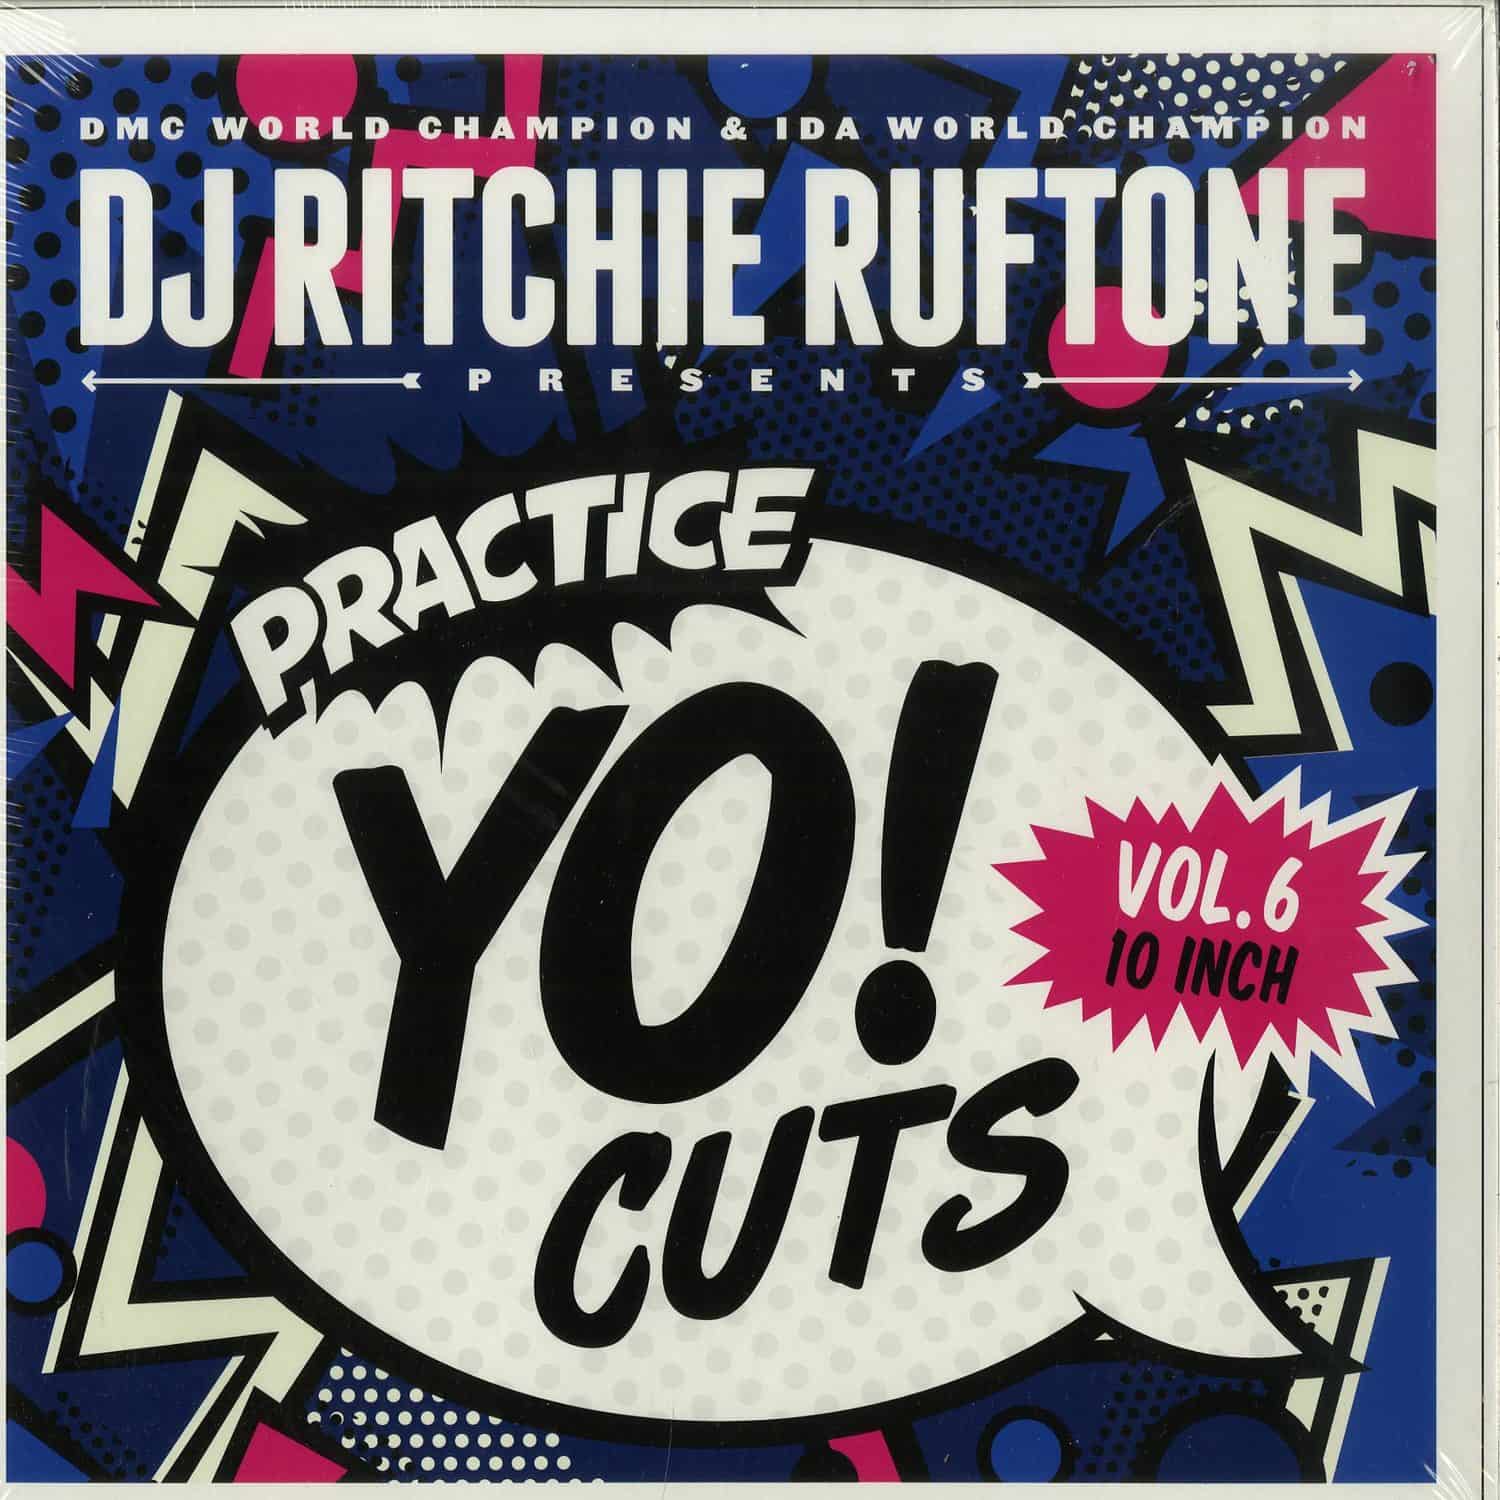 DJ Ritchie Ruftone - PRACTICE YO! CUTS VOL. 6 